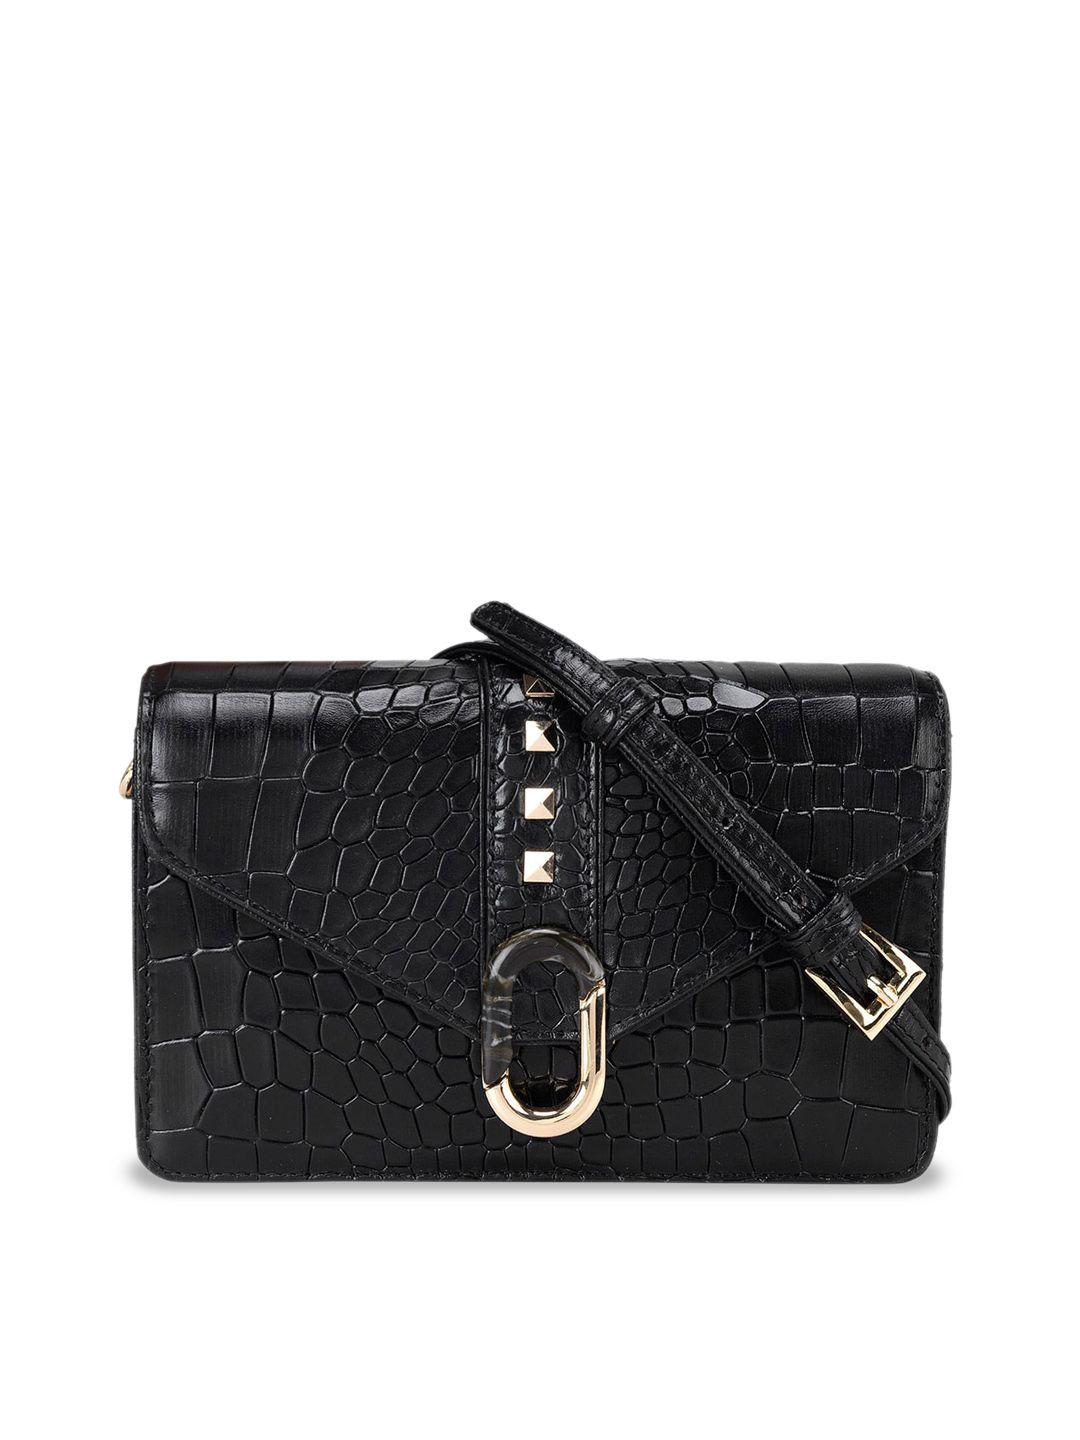 da milano black textured leather structured satchel